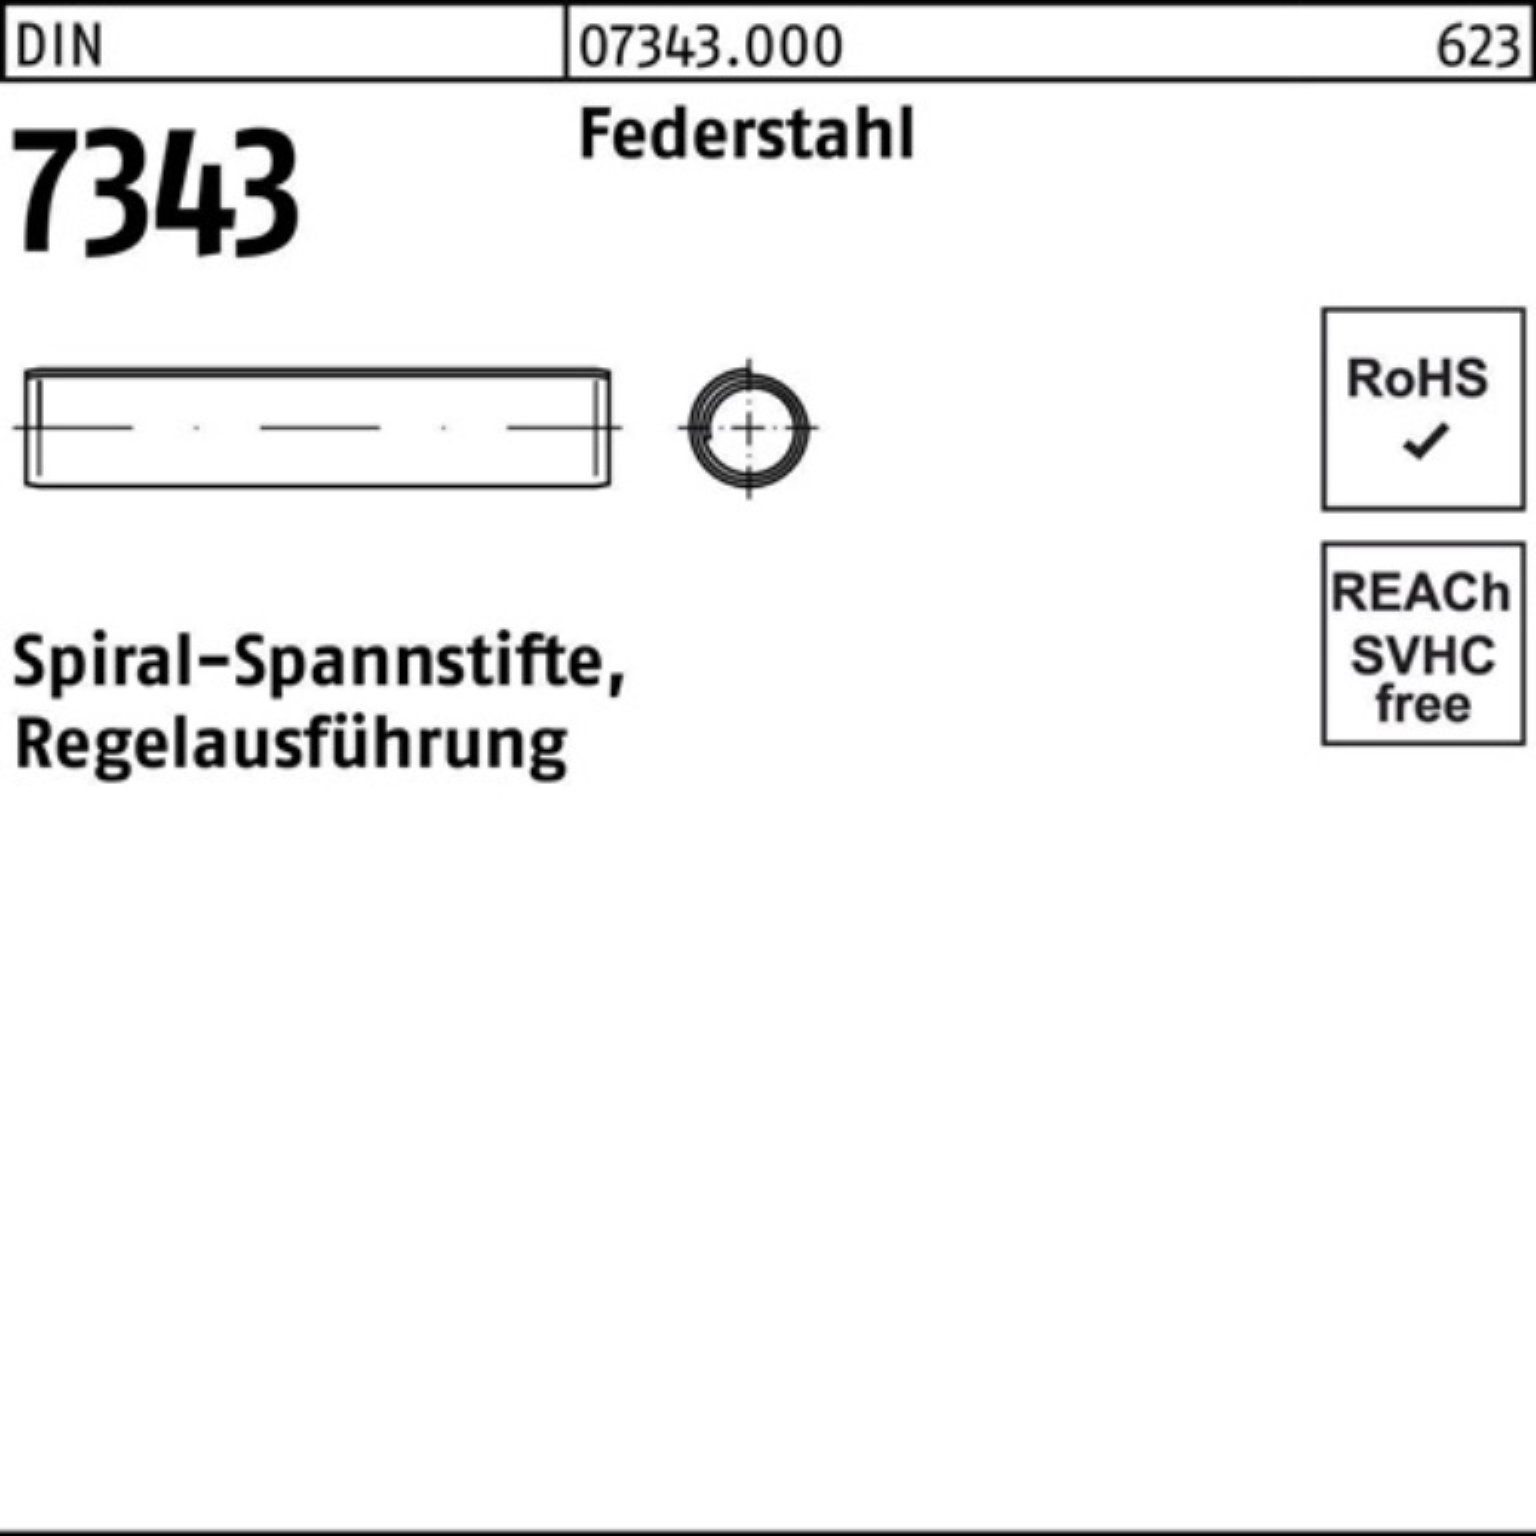 Federstahl Spannstift Pack Reyher 4x Regelau 7343/ISO DIN 8750 20 500er Spiralspannstift